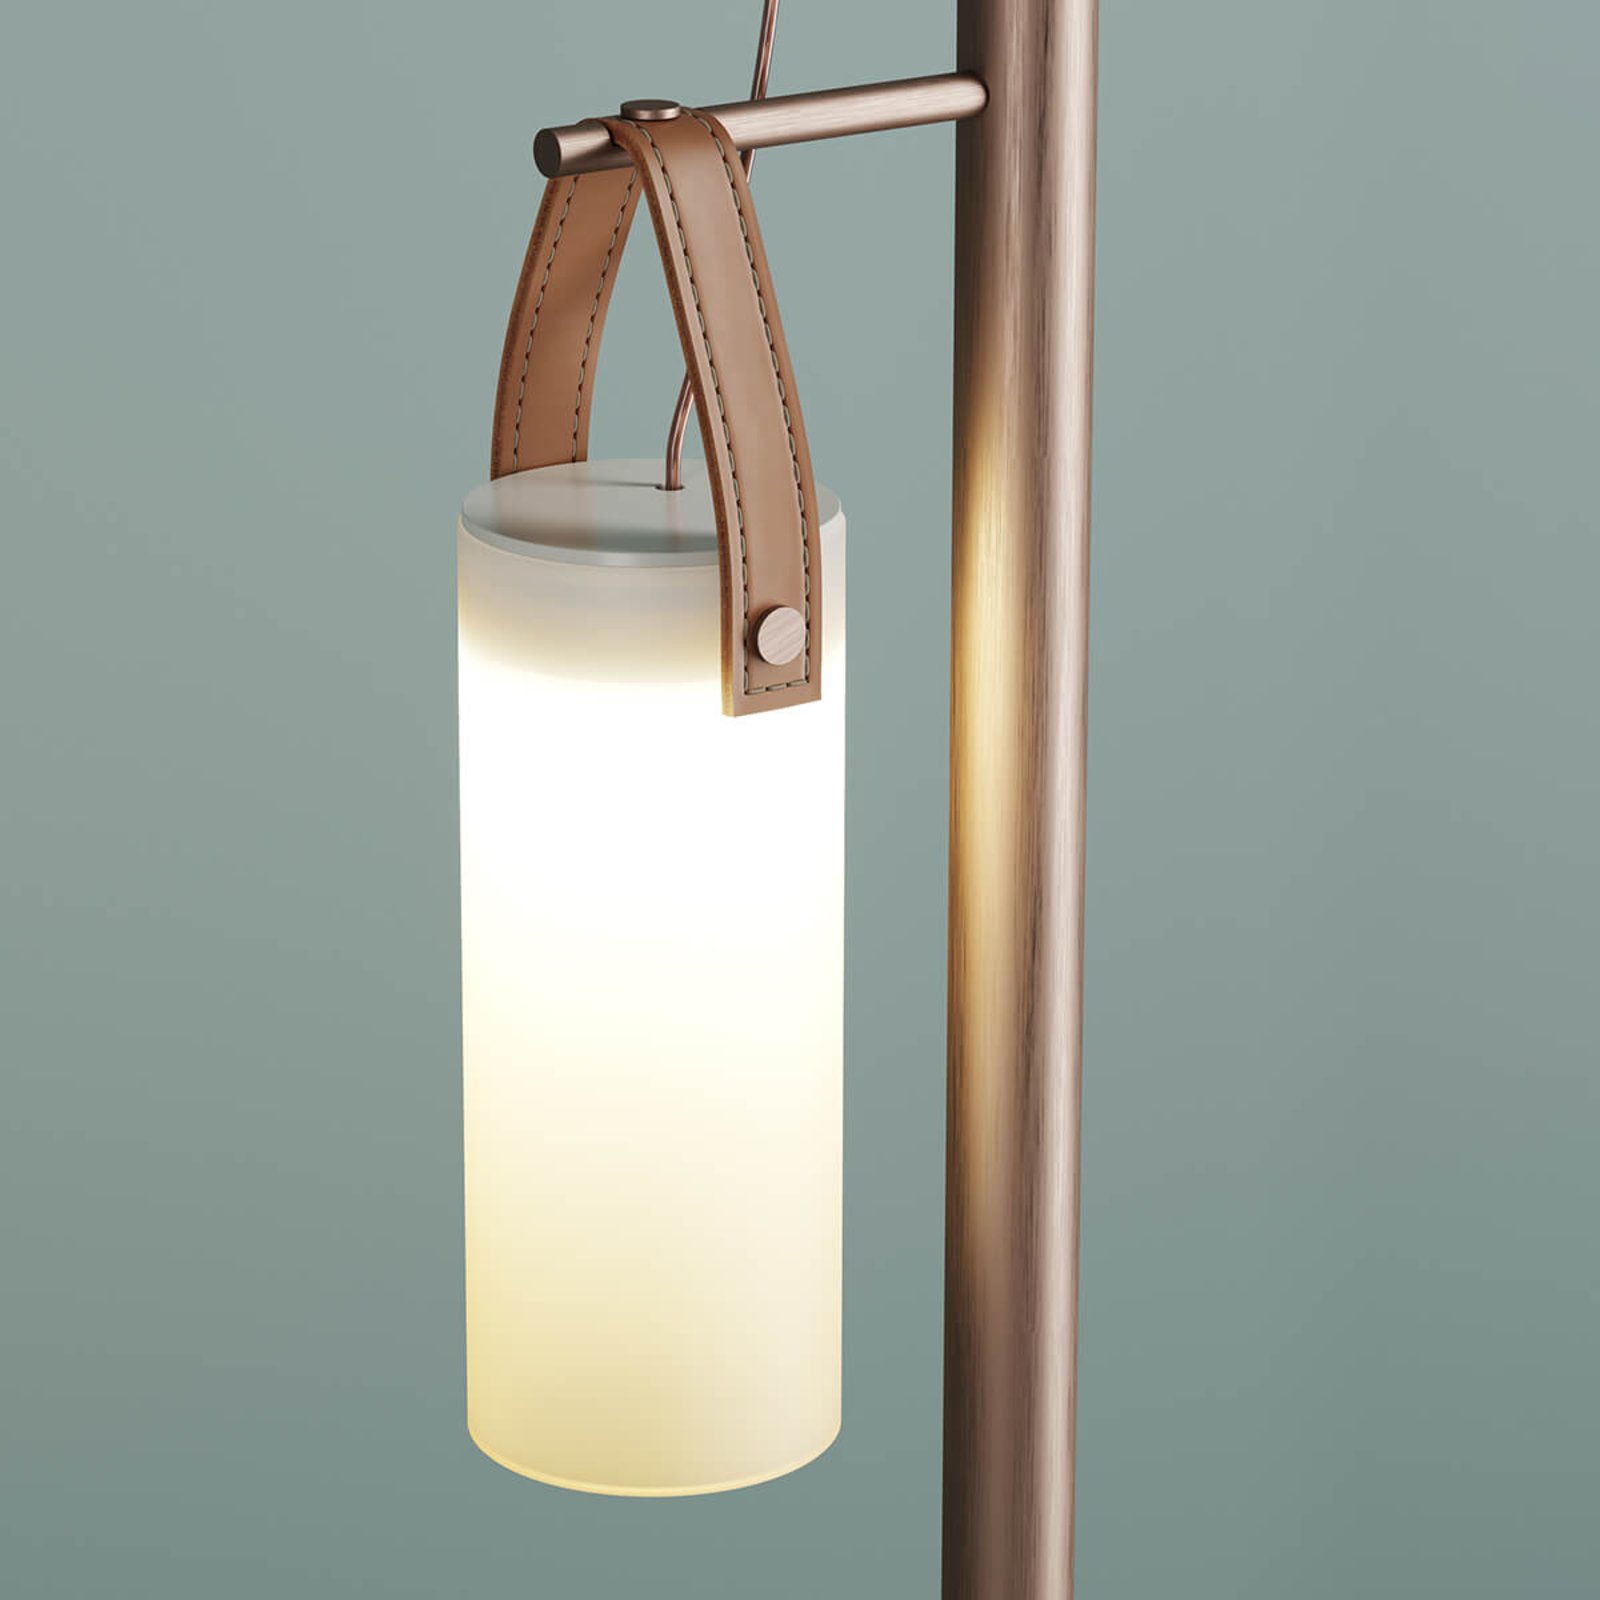 3-bulb designer LED floor lamp Galerie